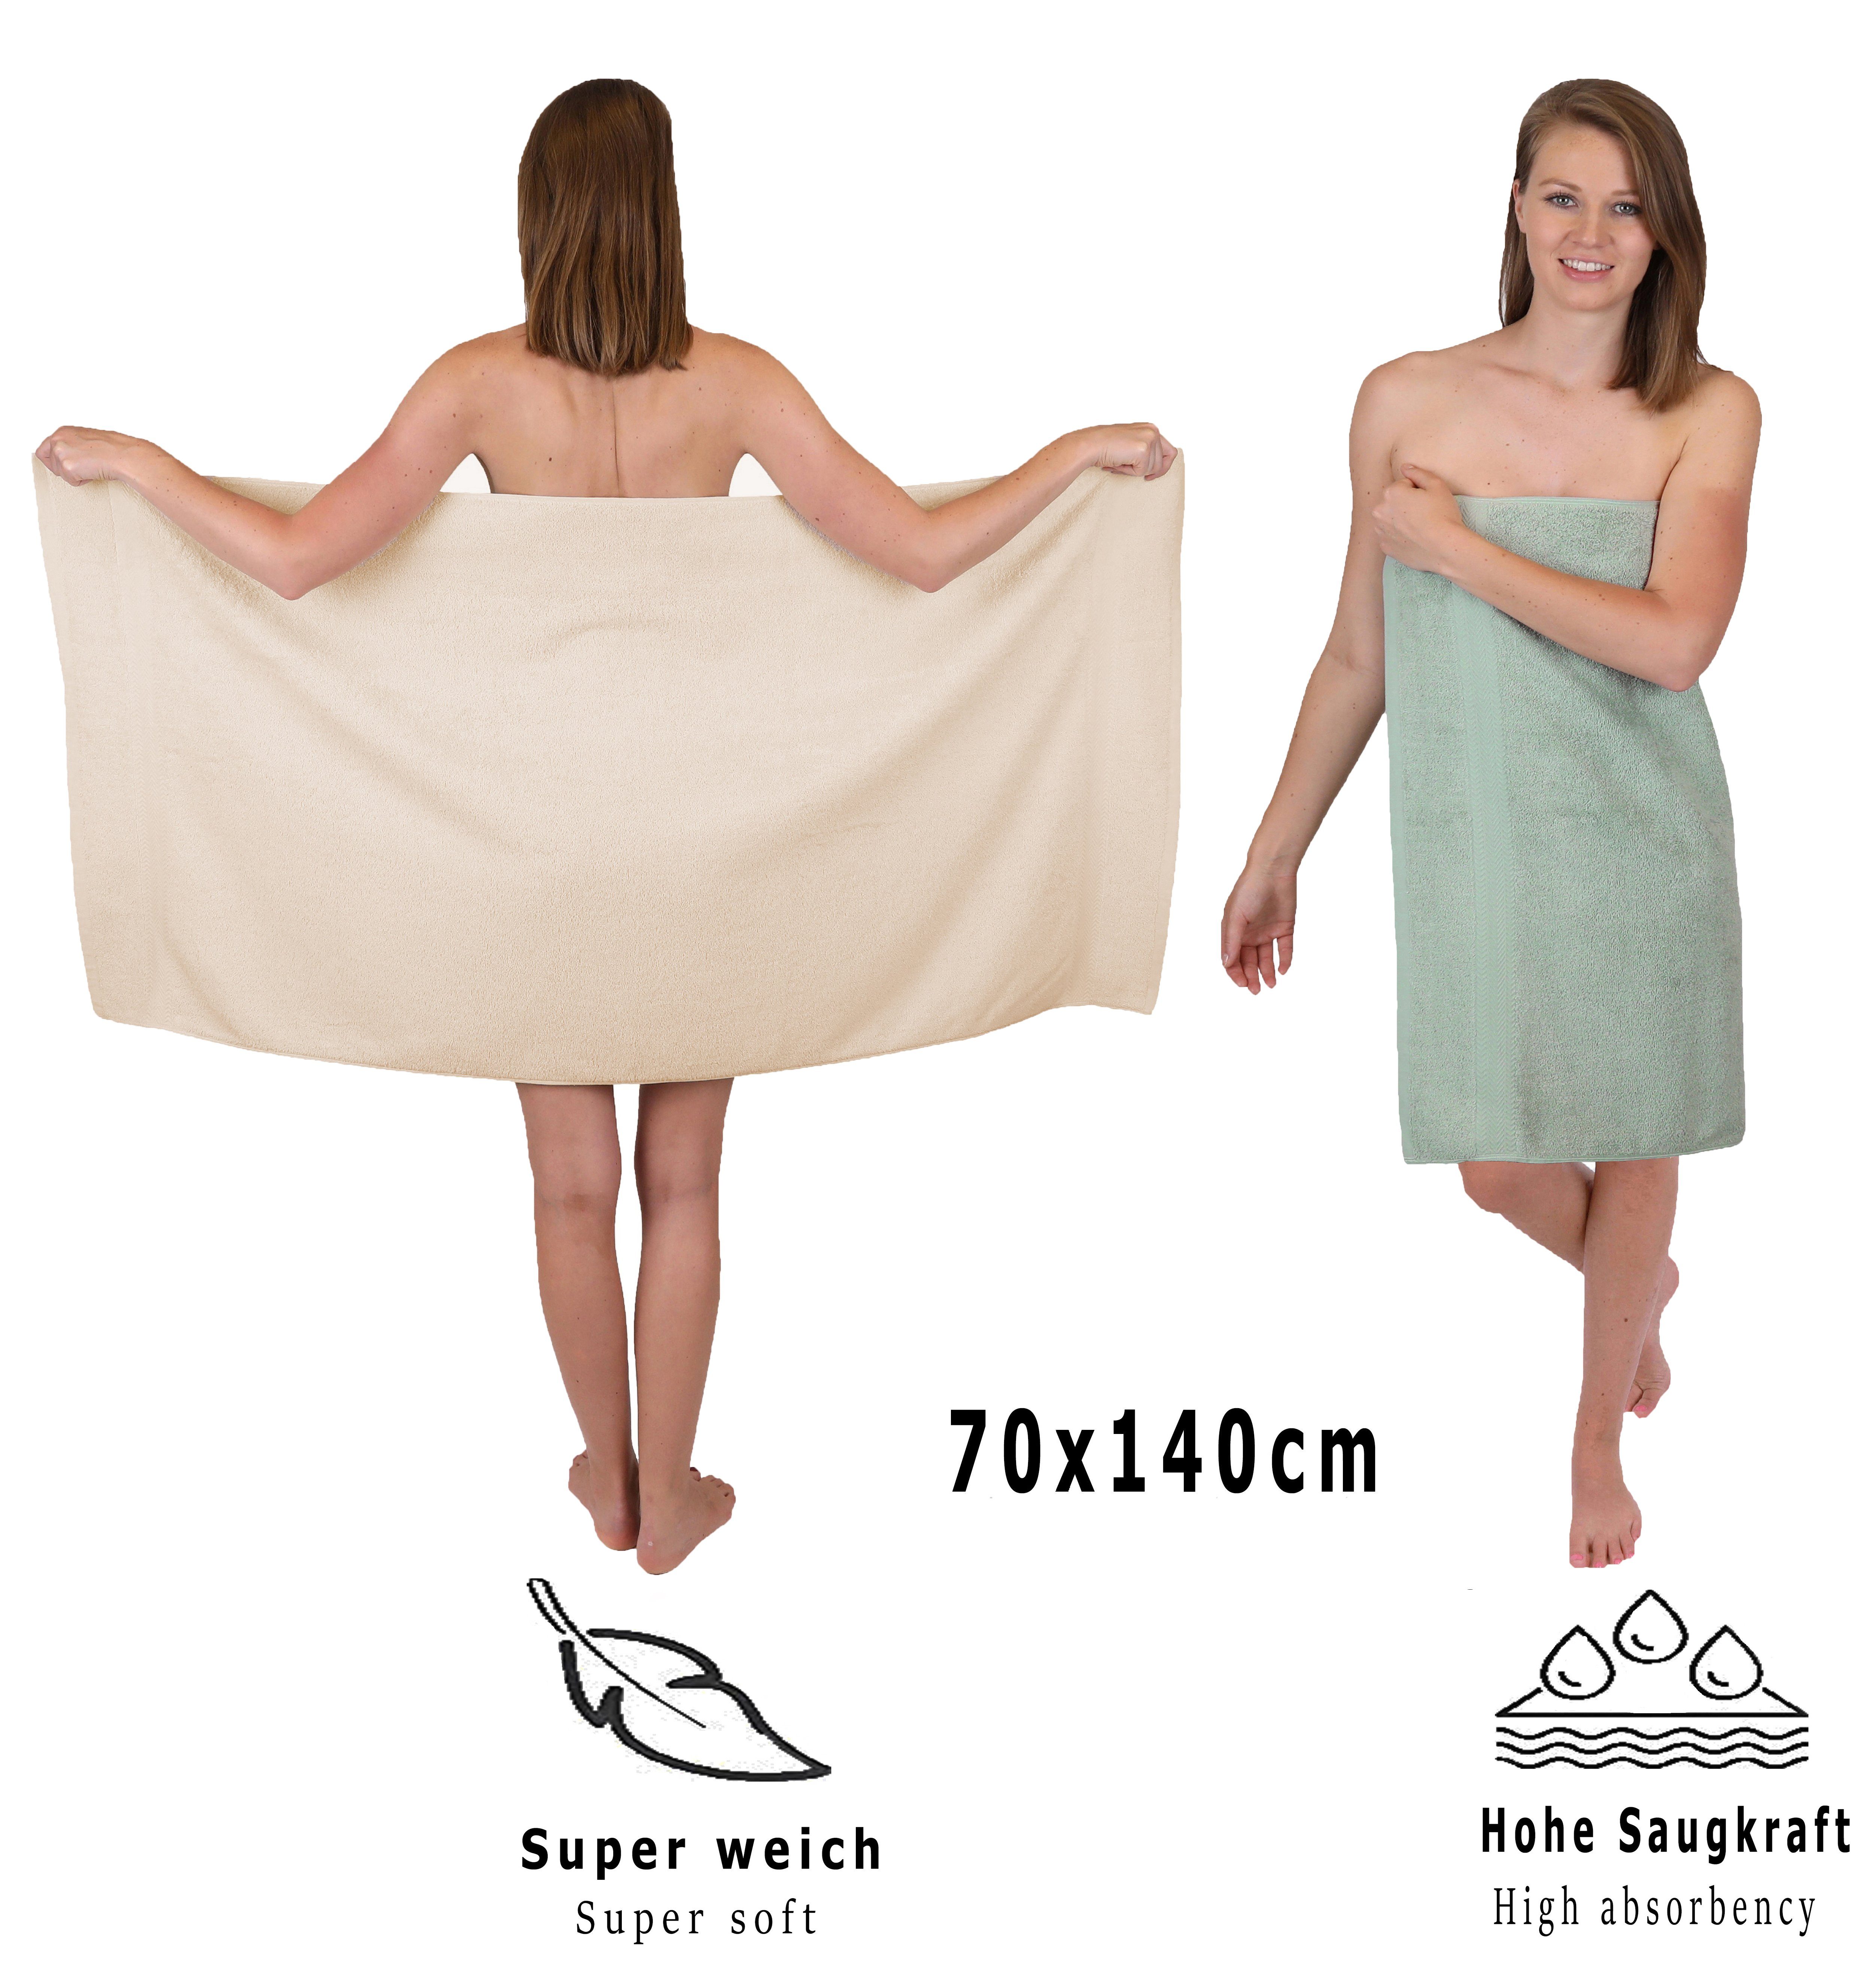 Betz Handtuch Set 12-tlg. Baumwolle, (12-tlg) Sand/heugrün, Set Handtuch 100% Premium Farbe